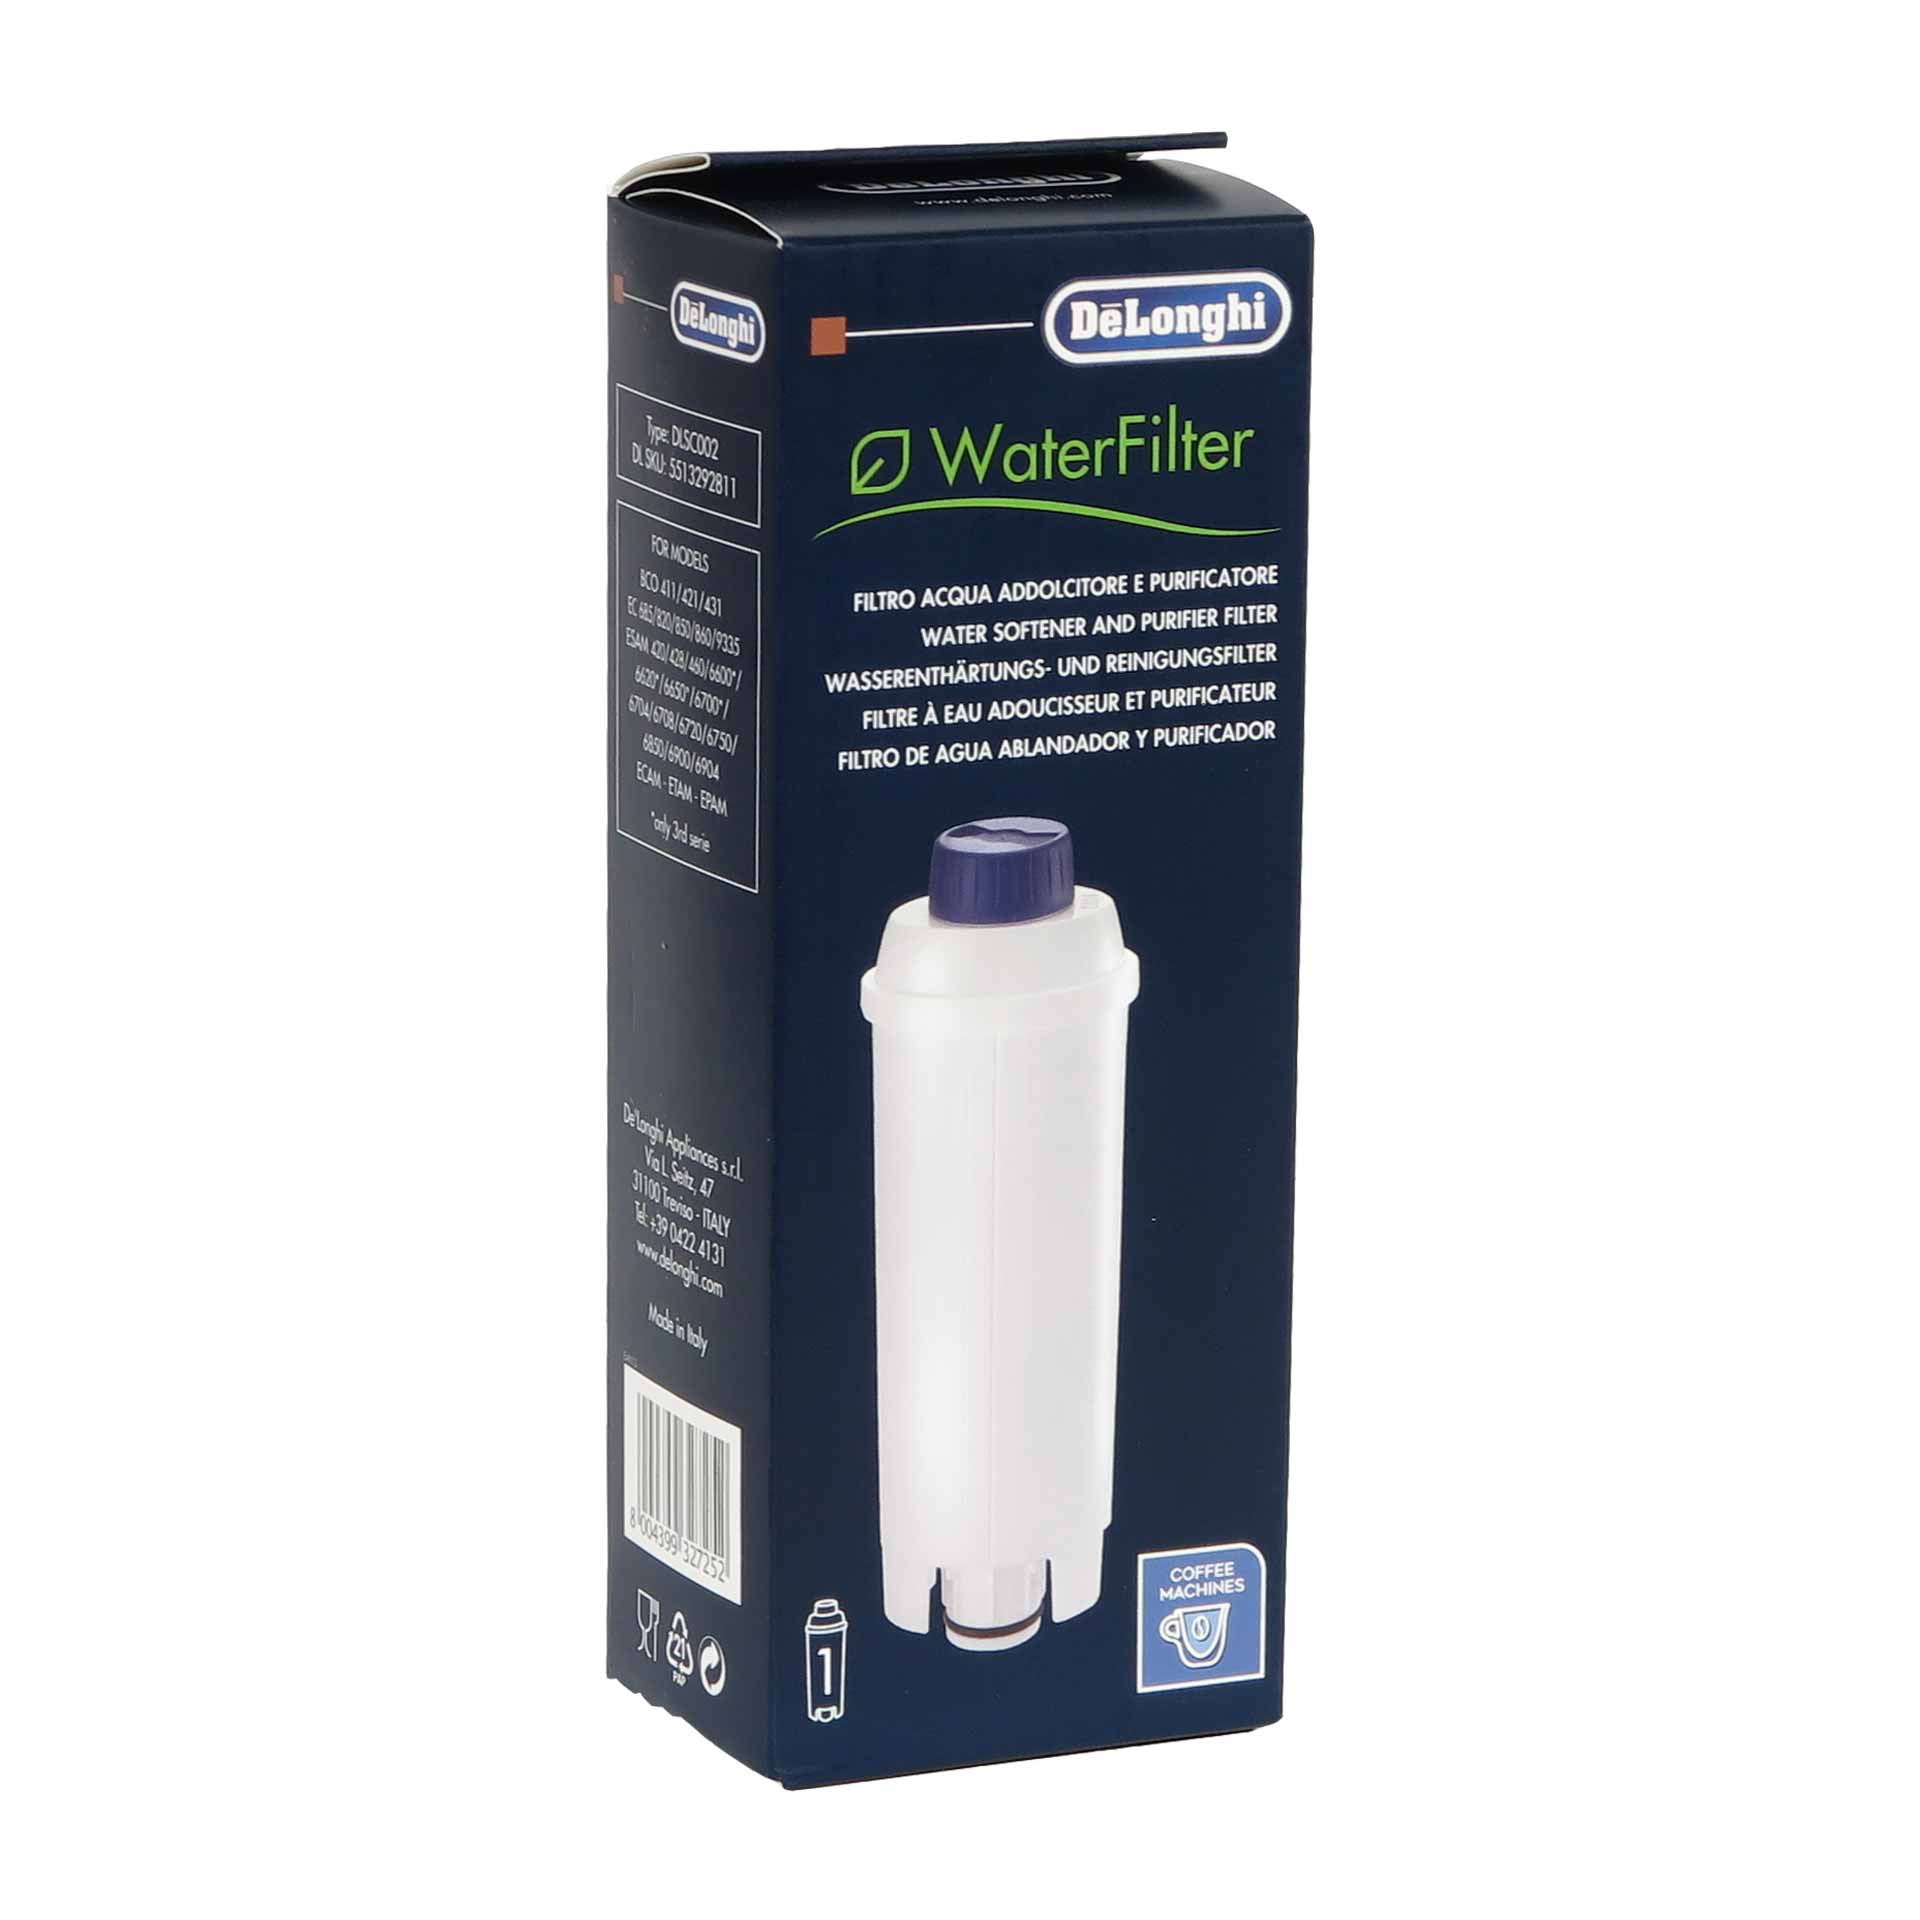 B-Ware DeLonghi Wasserfilter DLS C002, 1 Stück